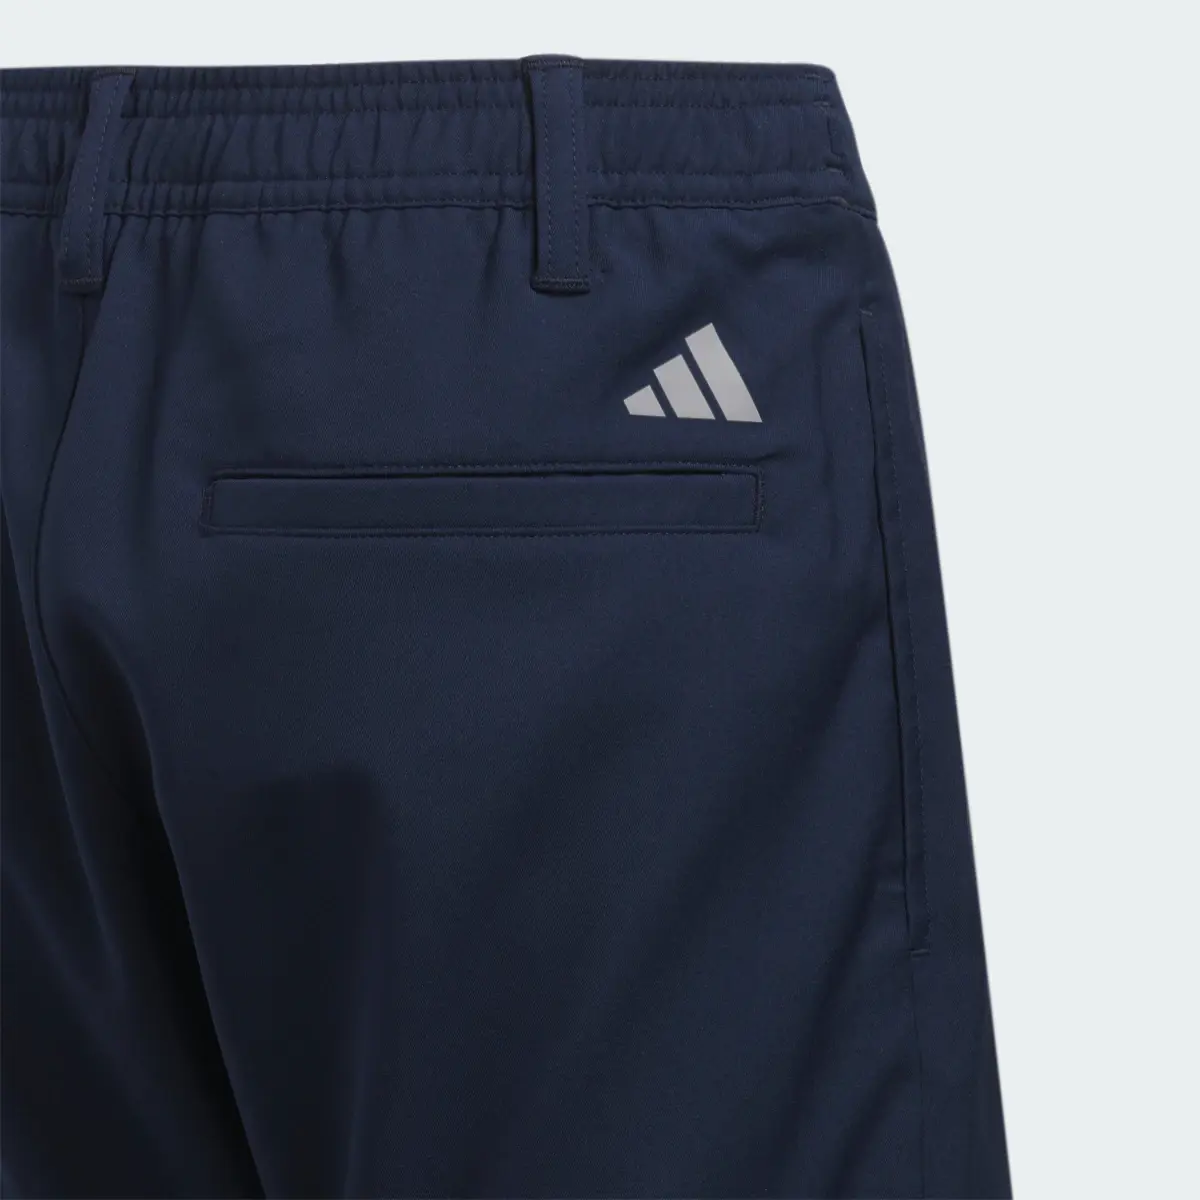 Adidas Pantalón corto Ultimate365 Adjustable (Adolescentes). 3